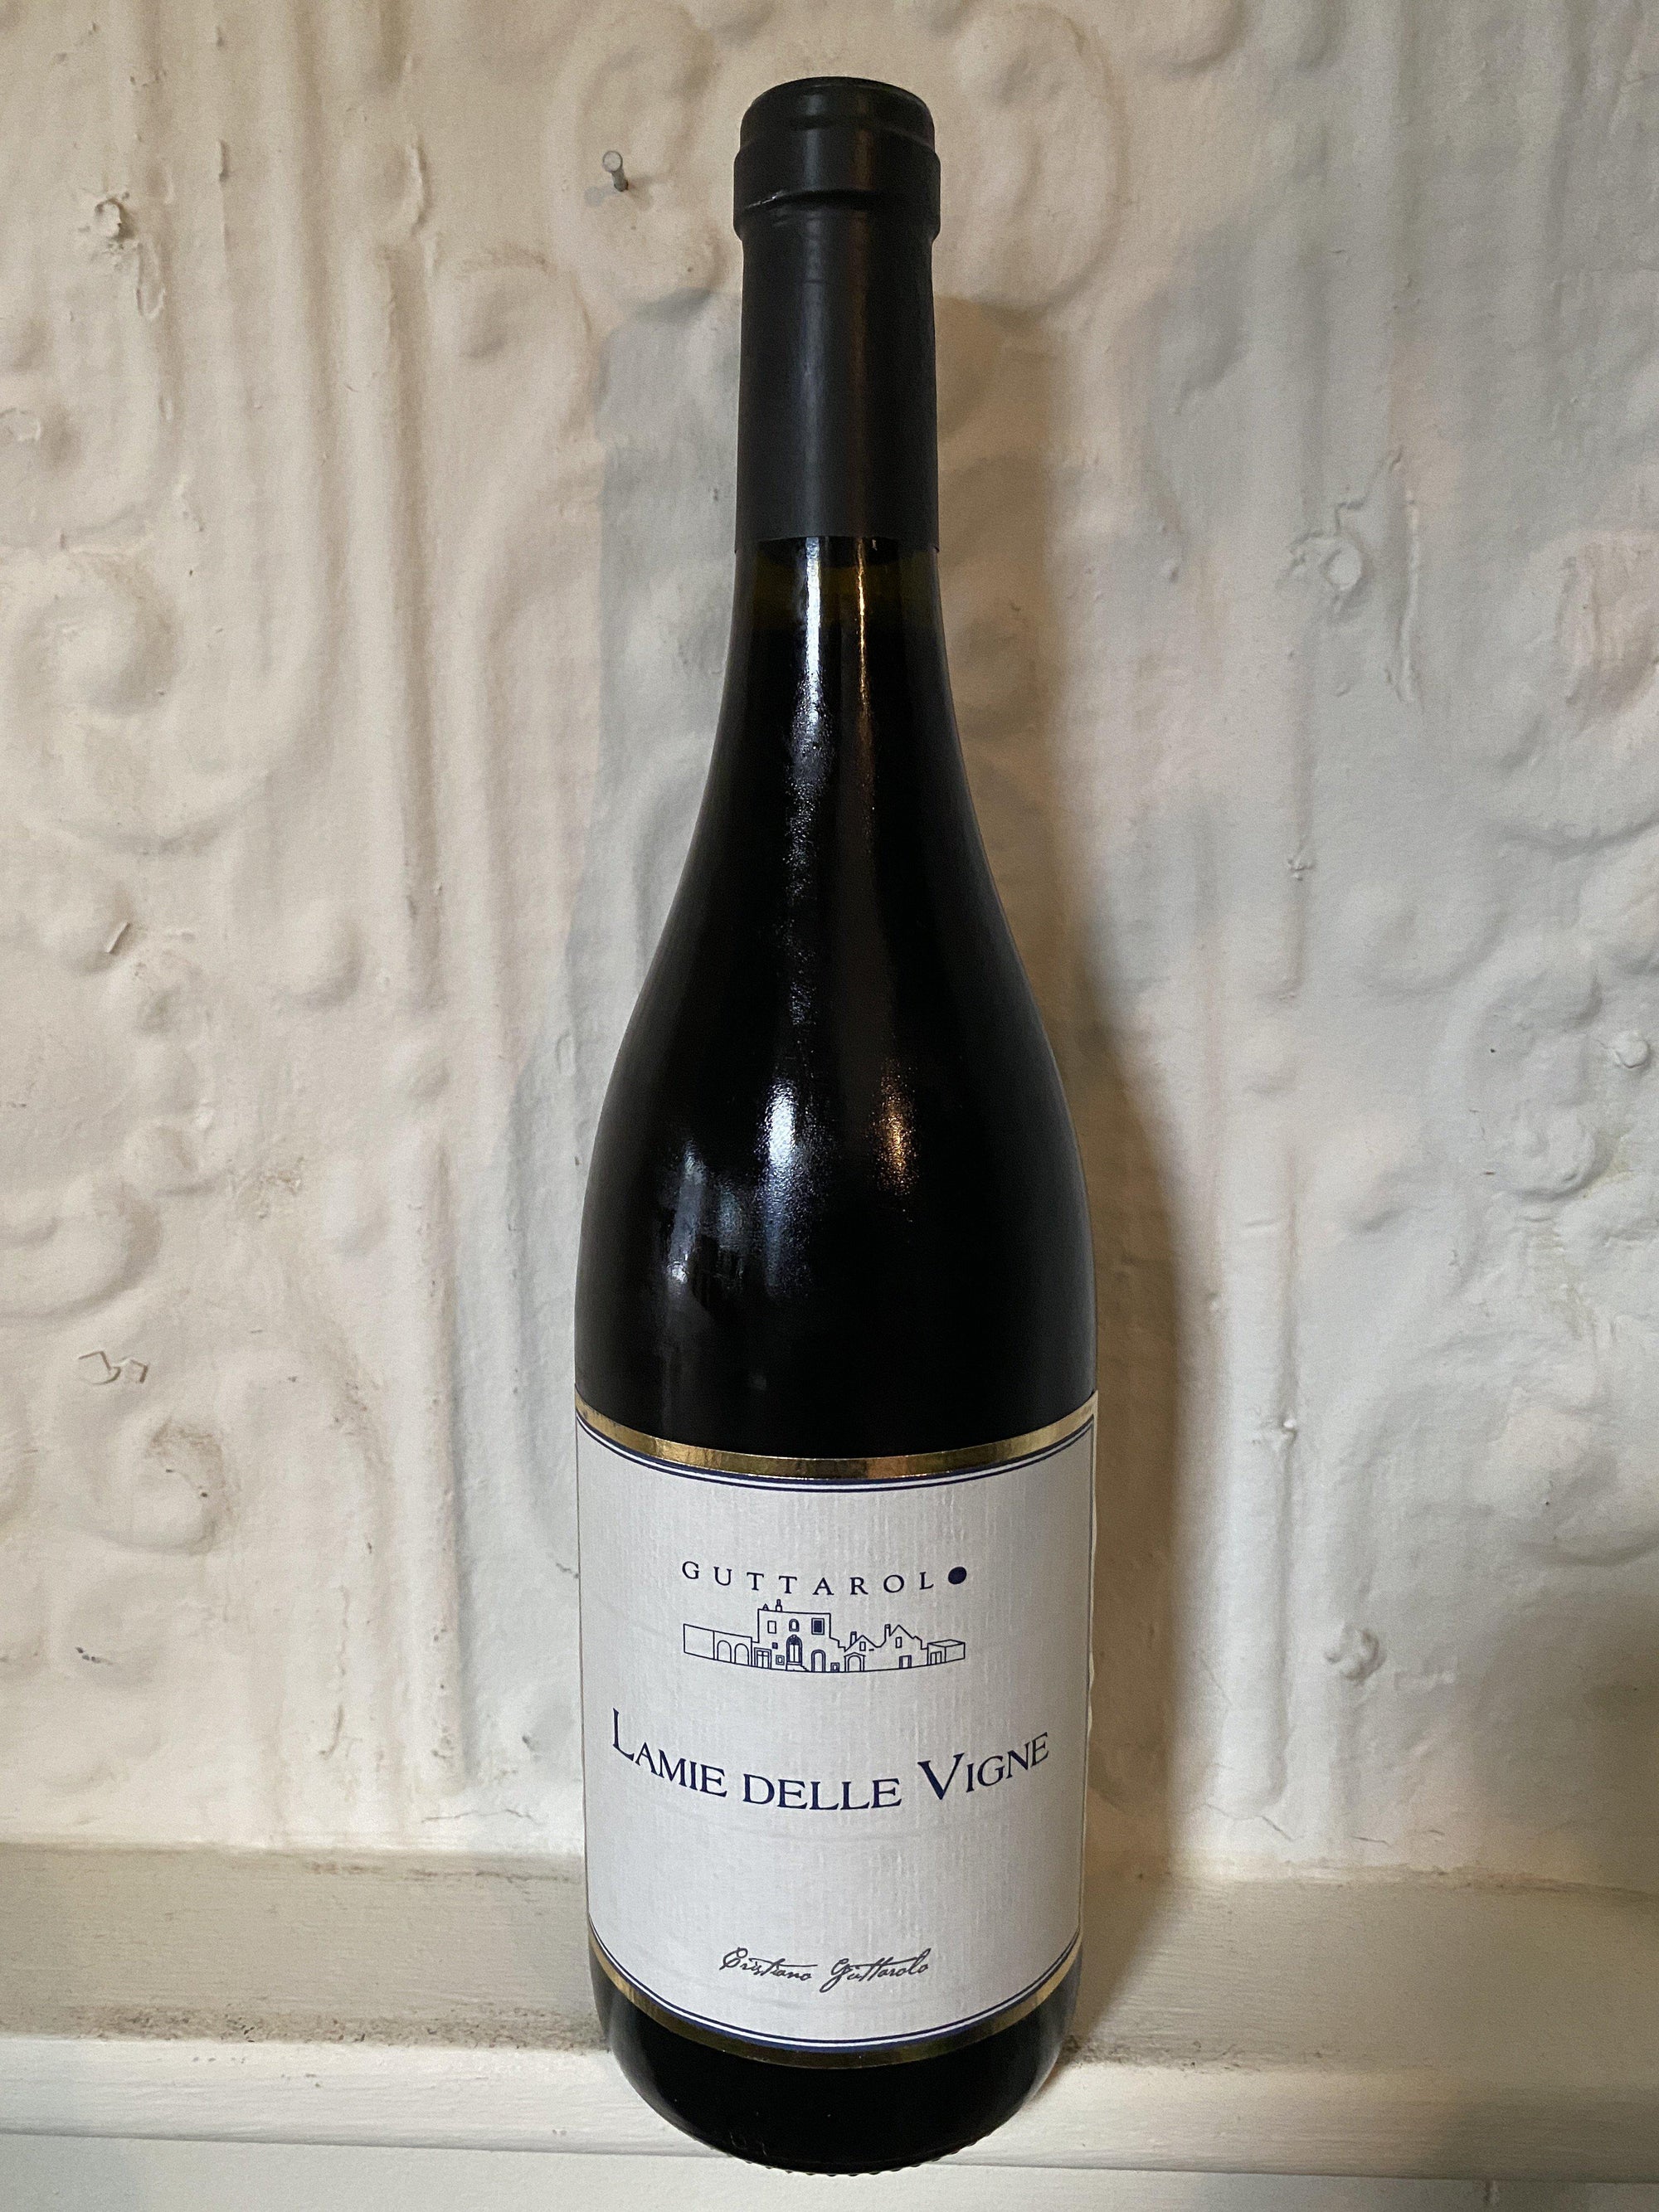 Primitivo "Lamie Delle Vigne", Guttarolo 2017 (Puglia, Italy)-Wine-Bibber & Bell